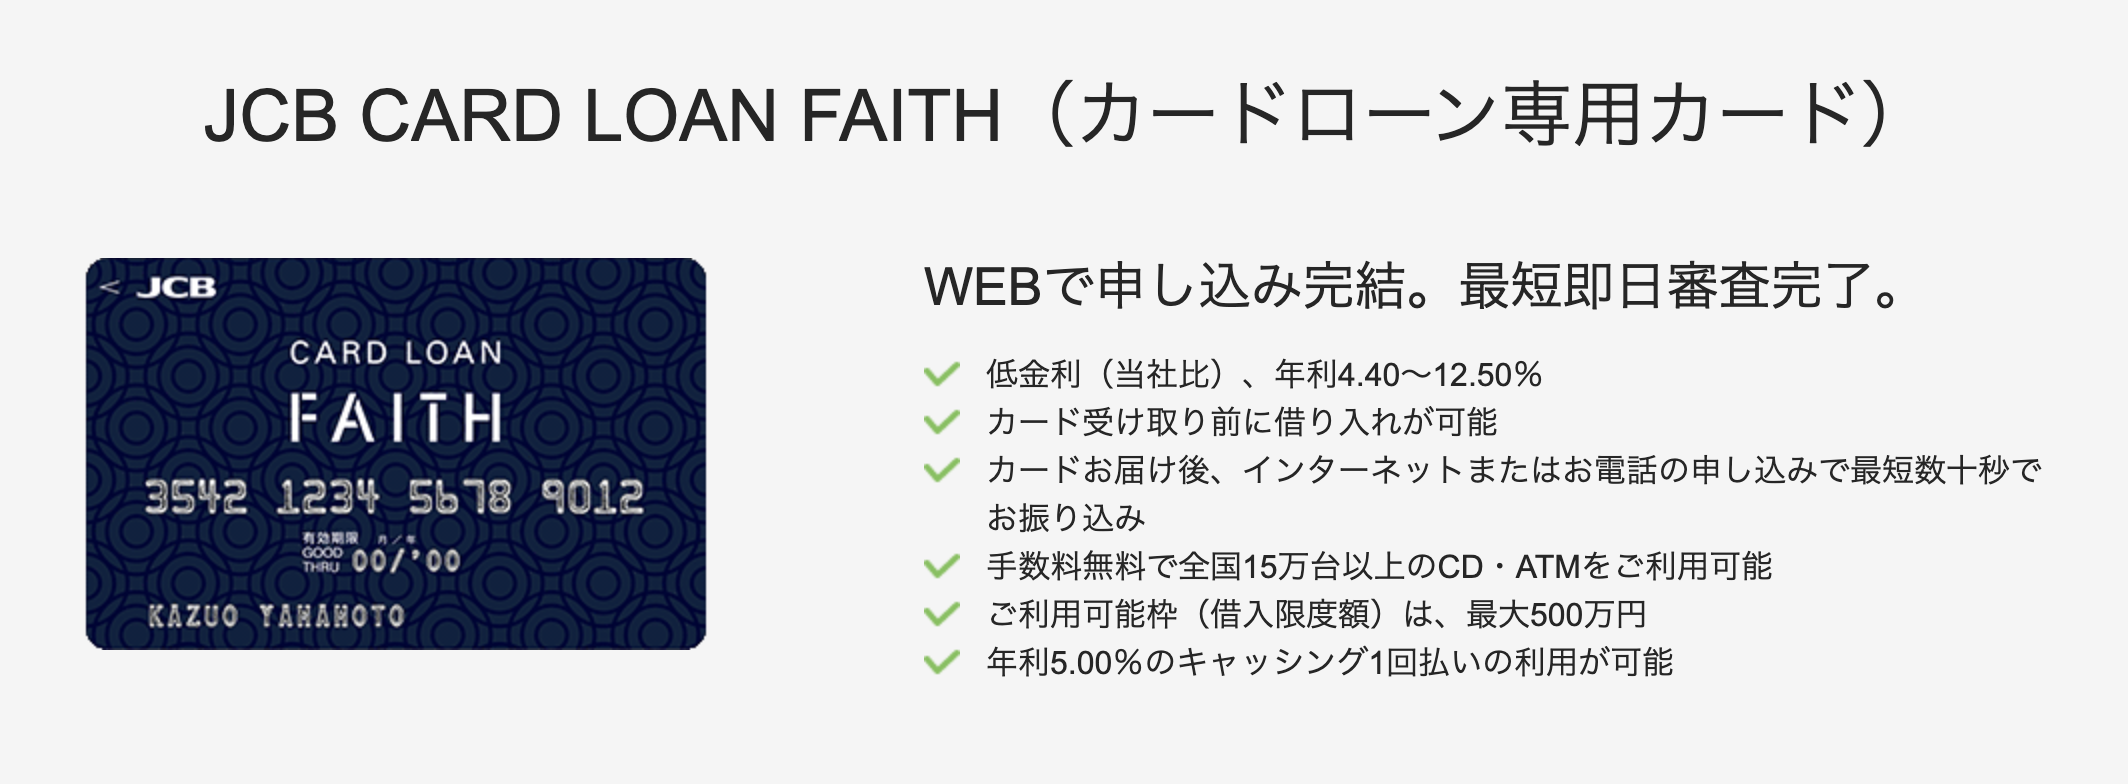 カードローン_おすすめ_JCB CARD LOAN FAITH